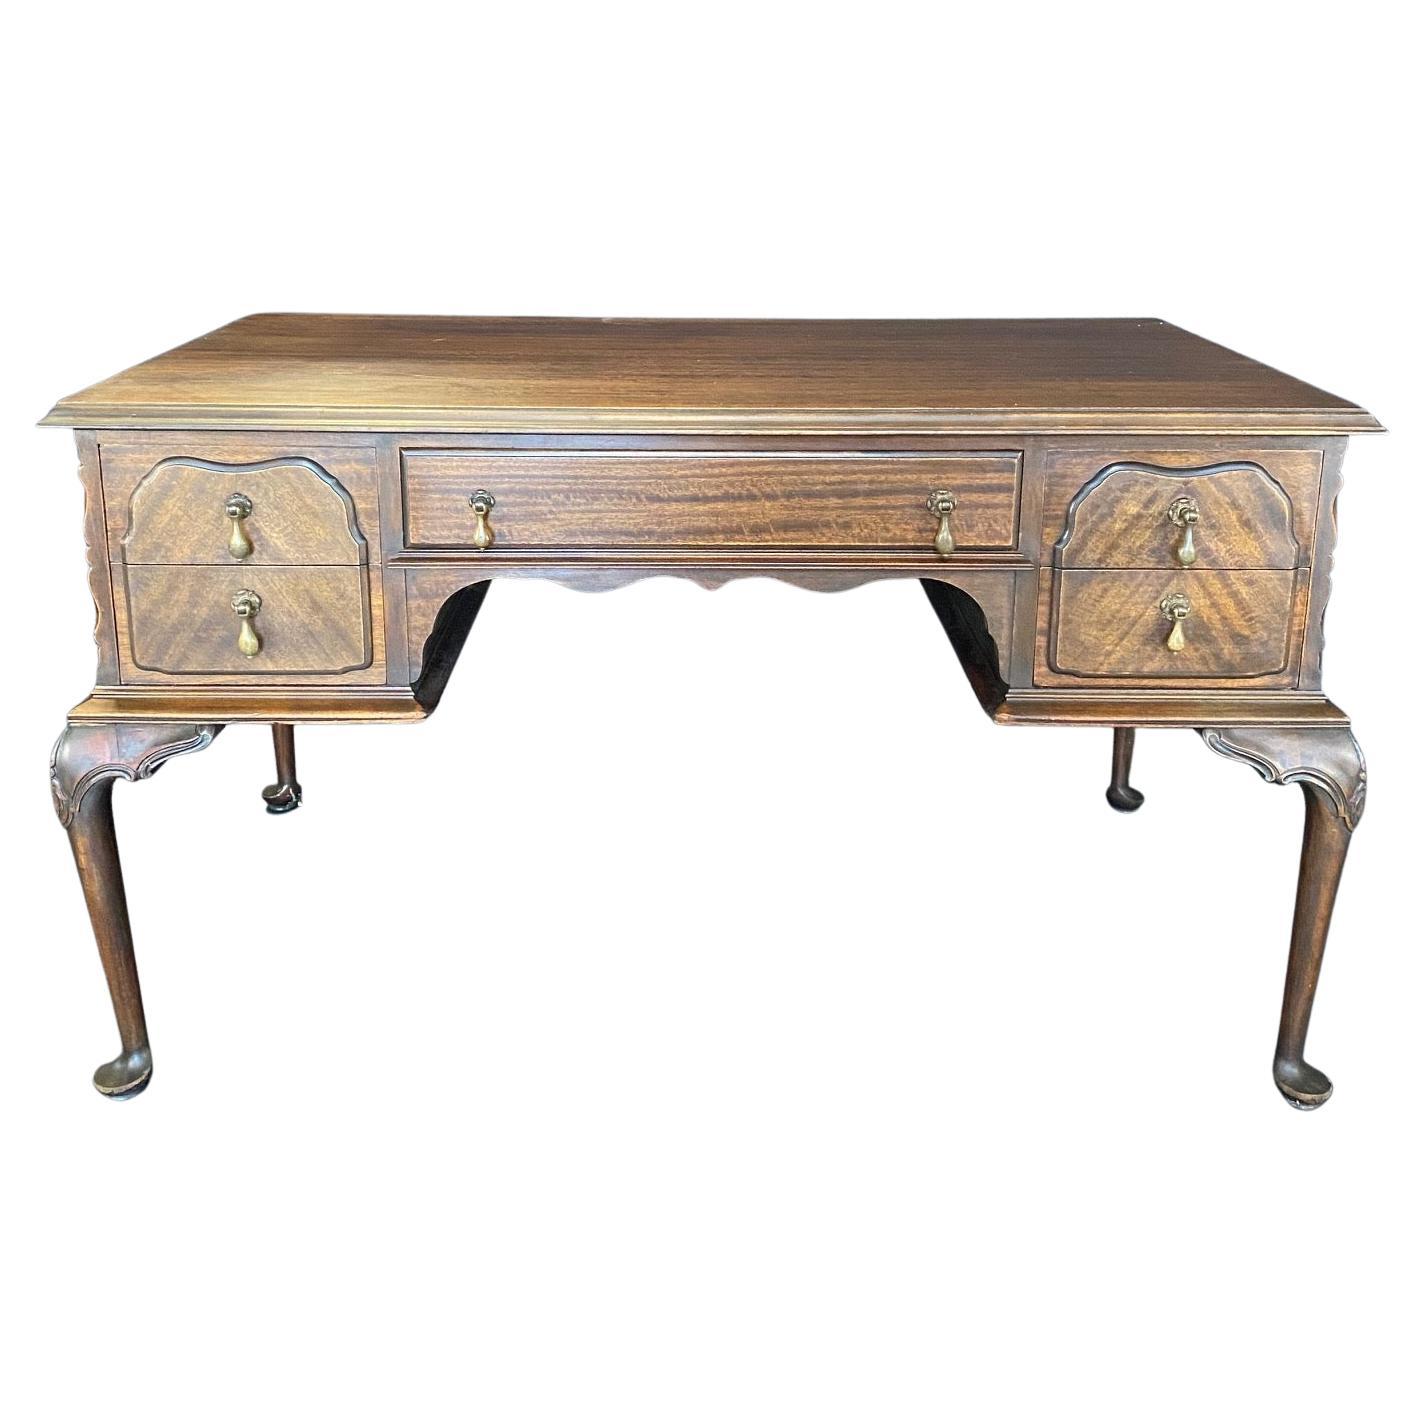 Belle table ou bureau français ancien de style Louis XV